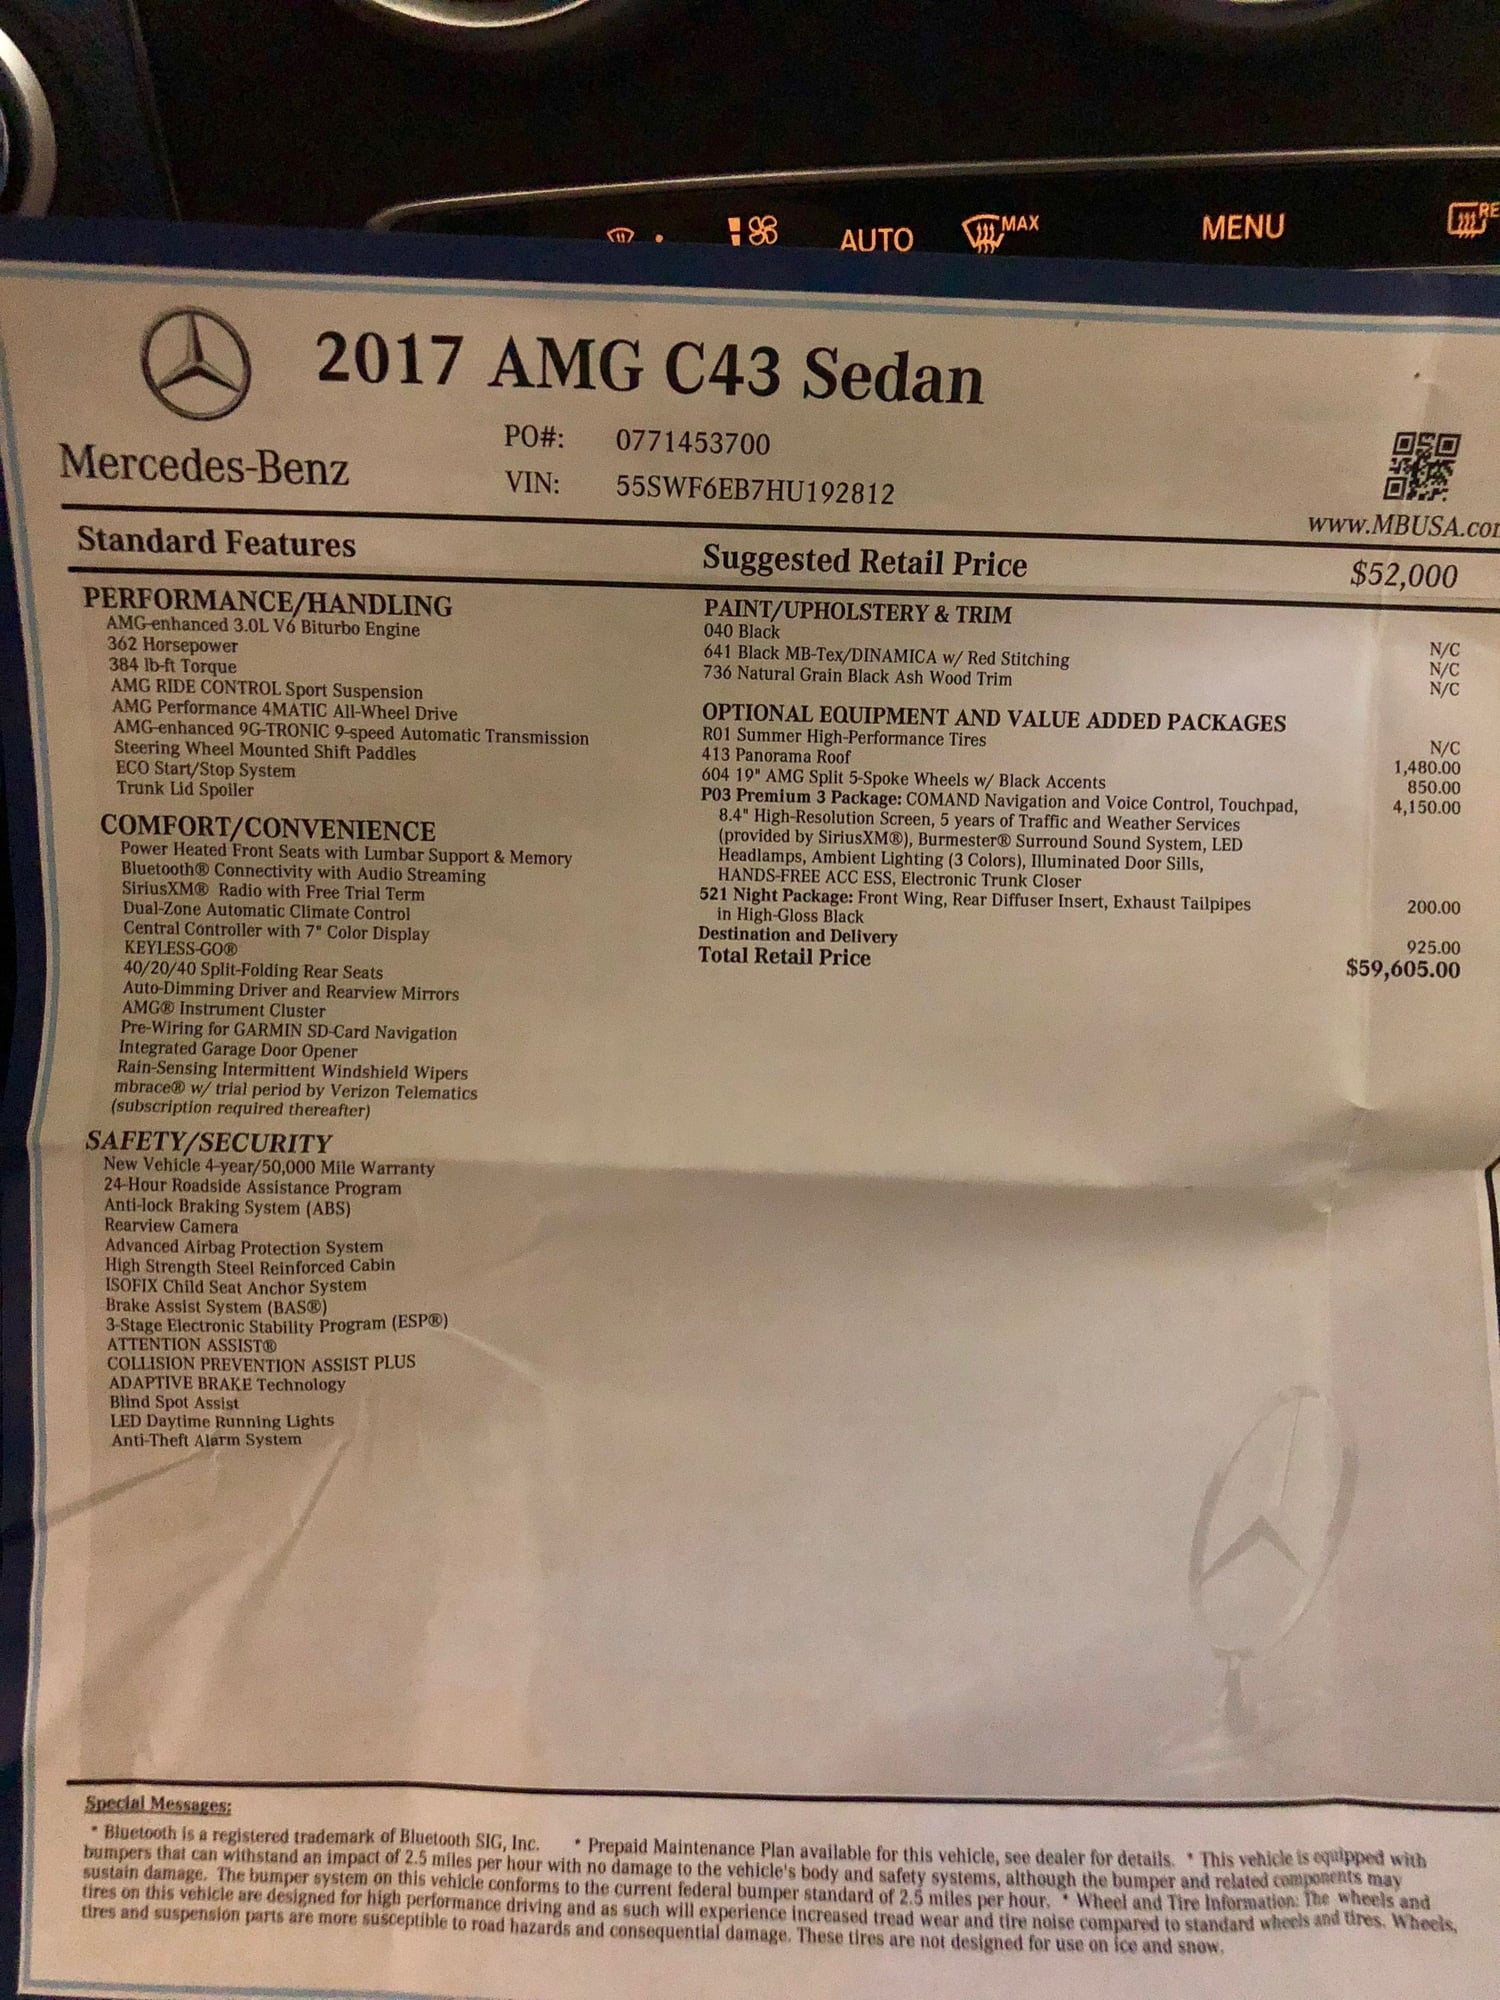 2017 Mercedes-Benz C43 AMG - 2017 C43 AMG Sedan - Used - VIN 55SWF6EB7HU192812 - 41,750 Miles - 6 cyl - AWD - Automatic - Sedan - Black - San Diego, CA 92078, United States